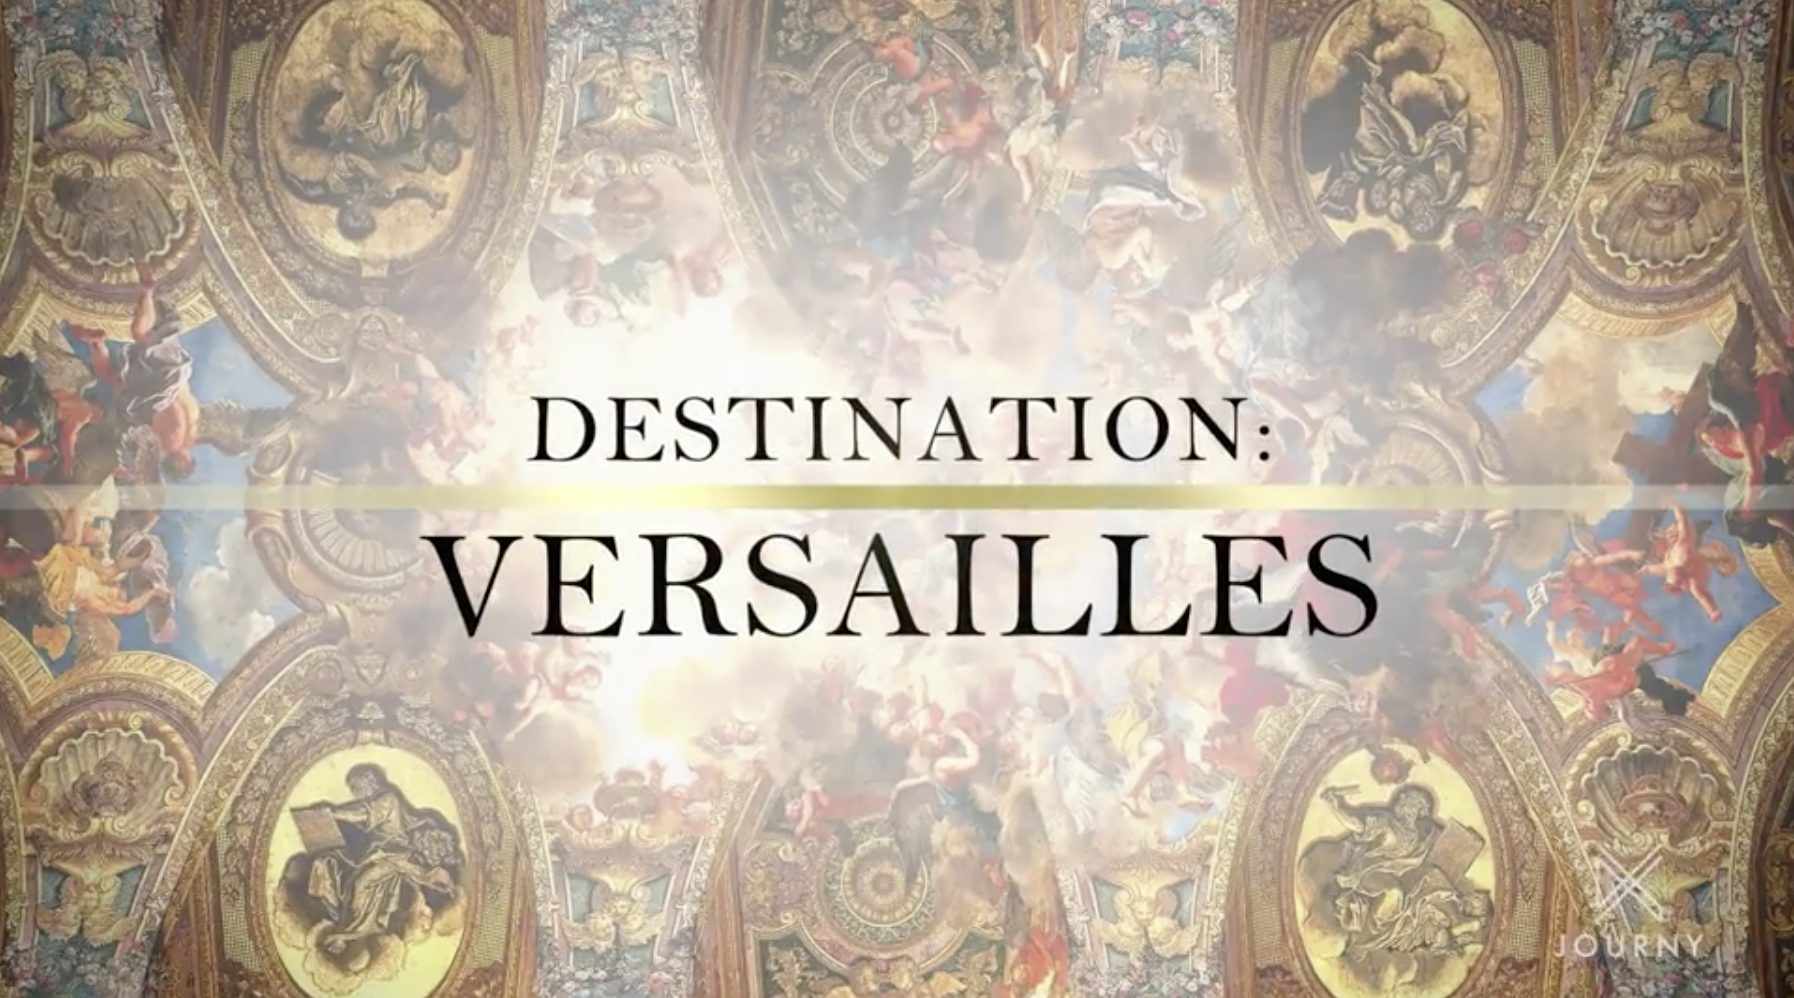 Destination Versailles